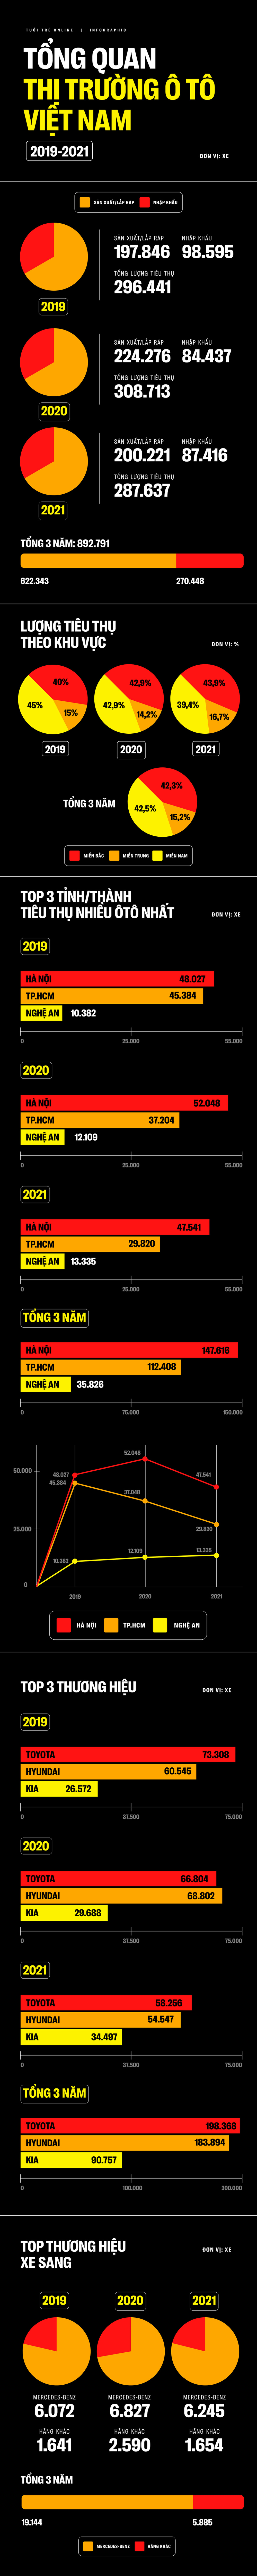 Thị trường ôtô Việt 3 năm qua: Toyota bán nhiều nhất, người Hà Nội đăng ký nhiều xe nhất - Ảnh 1.